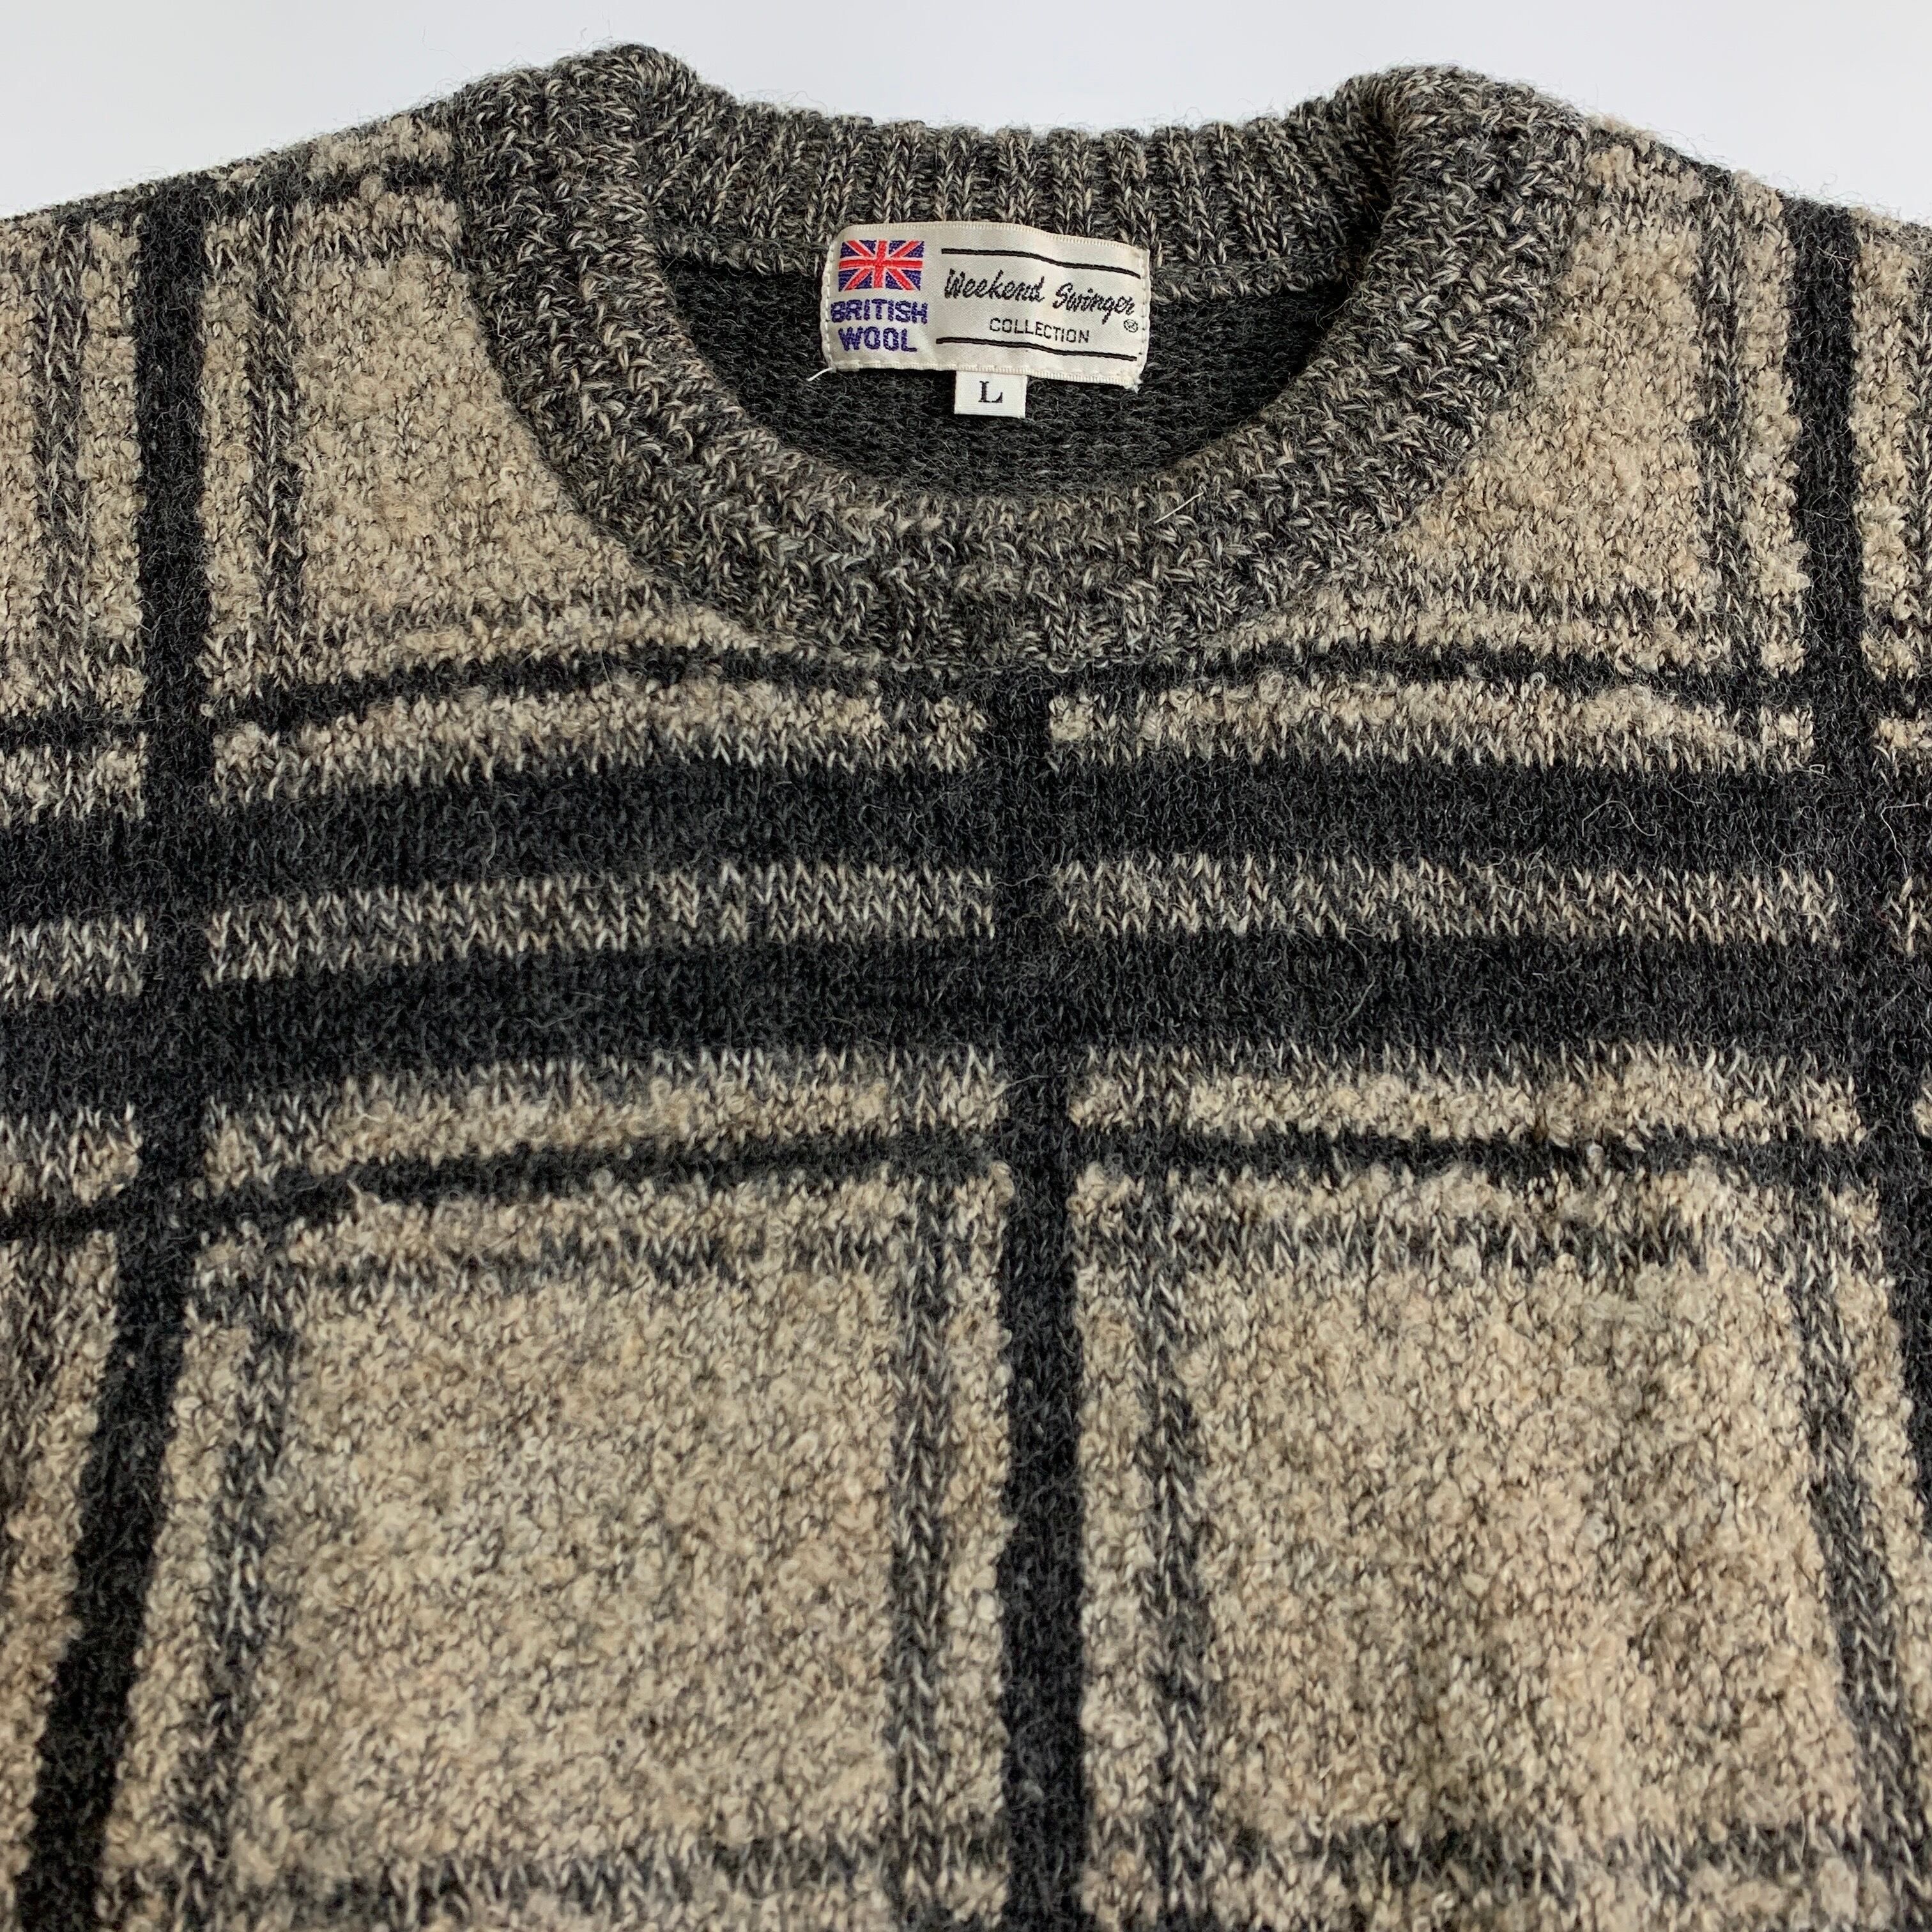 British wool ブリティッシュウール セーター